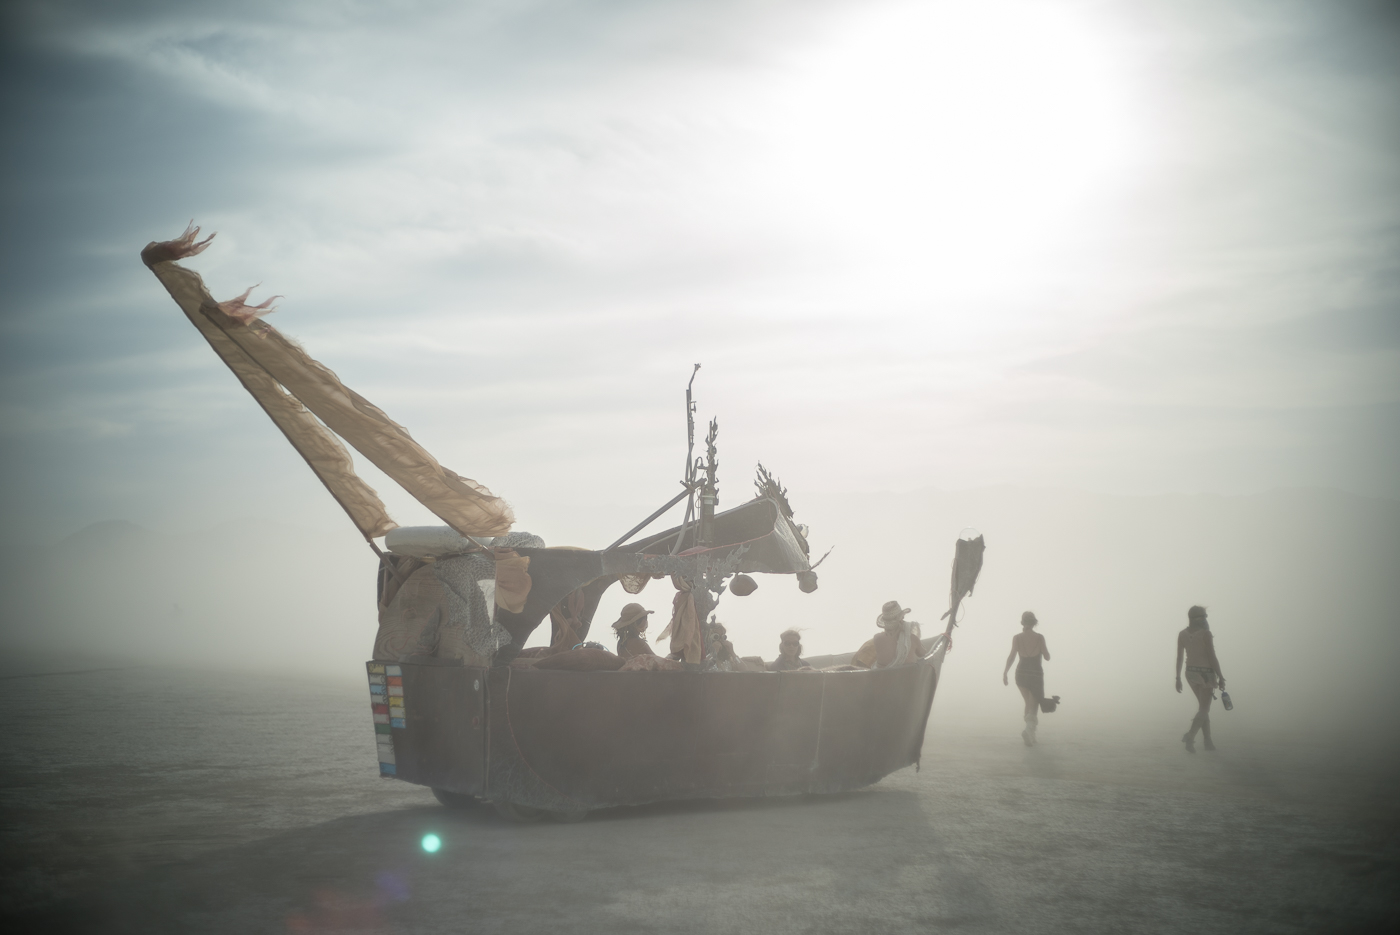 Dusty Ship, Burning Man 2014: In Dust We Trust - Photos of a Dusty Playa